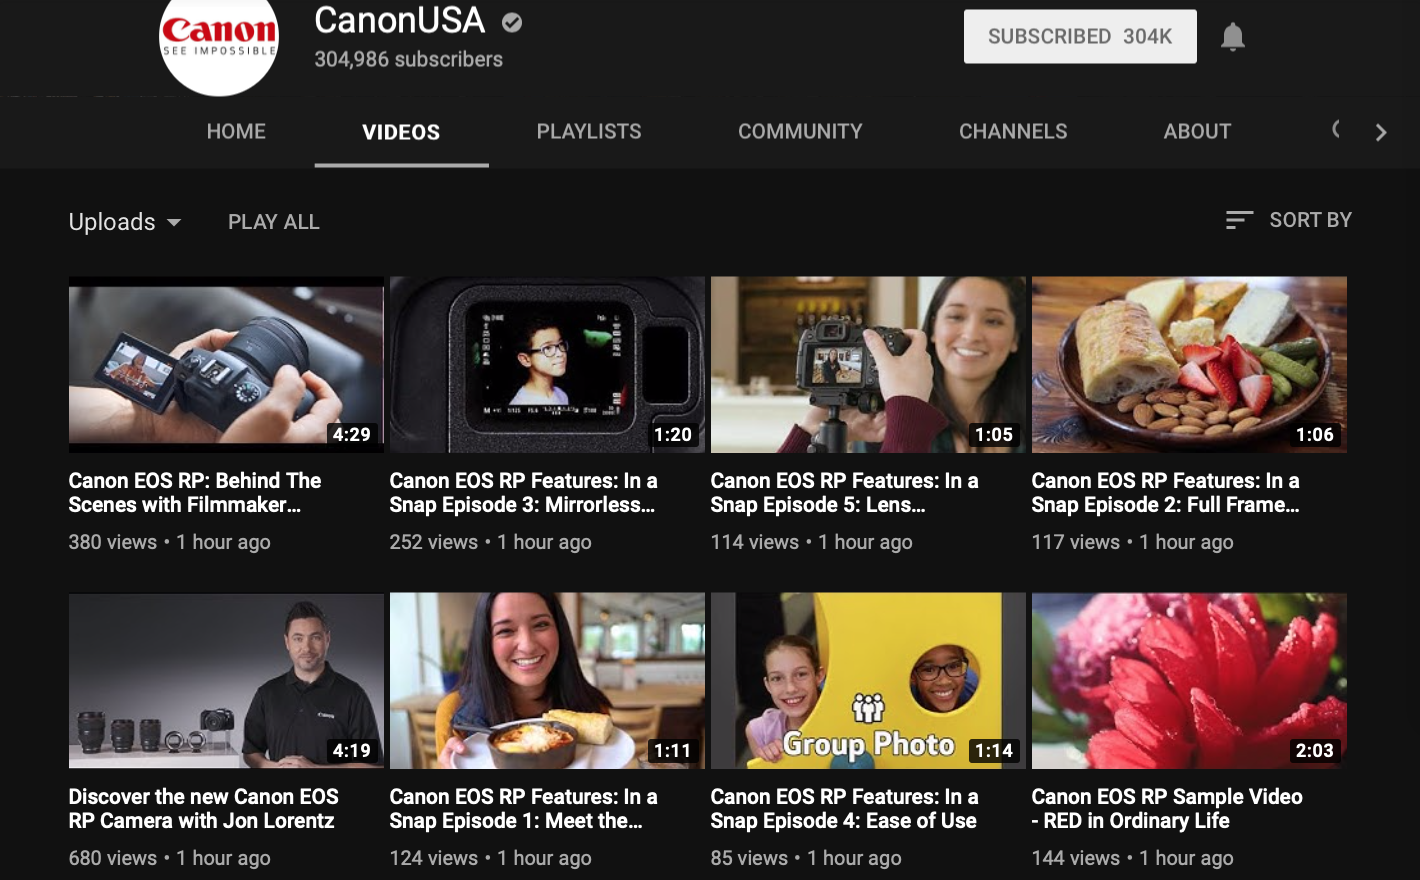 Canon USA đã đăng tải lên một vài Videos về Canon EOS RP trên Youtube